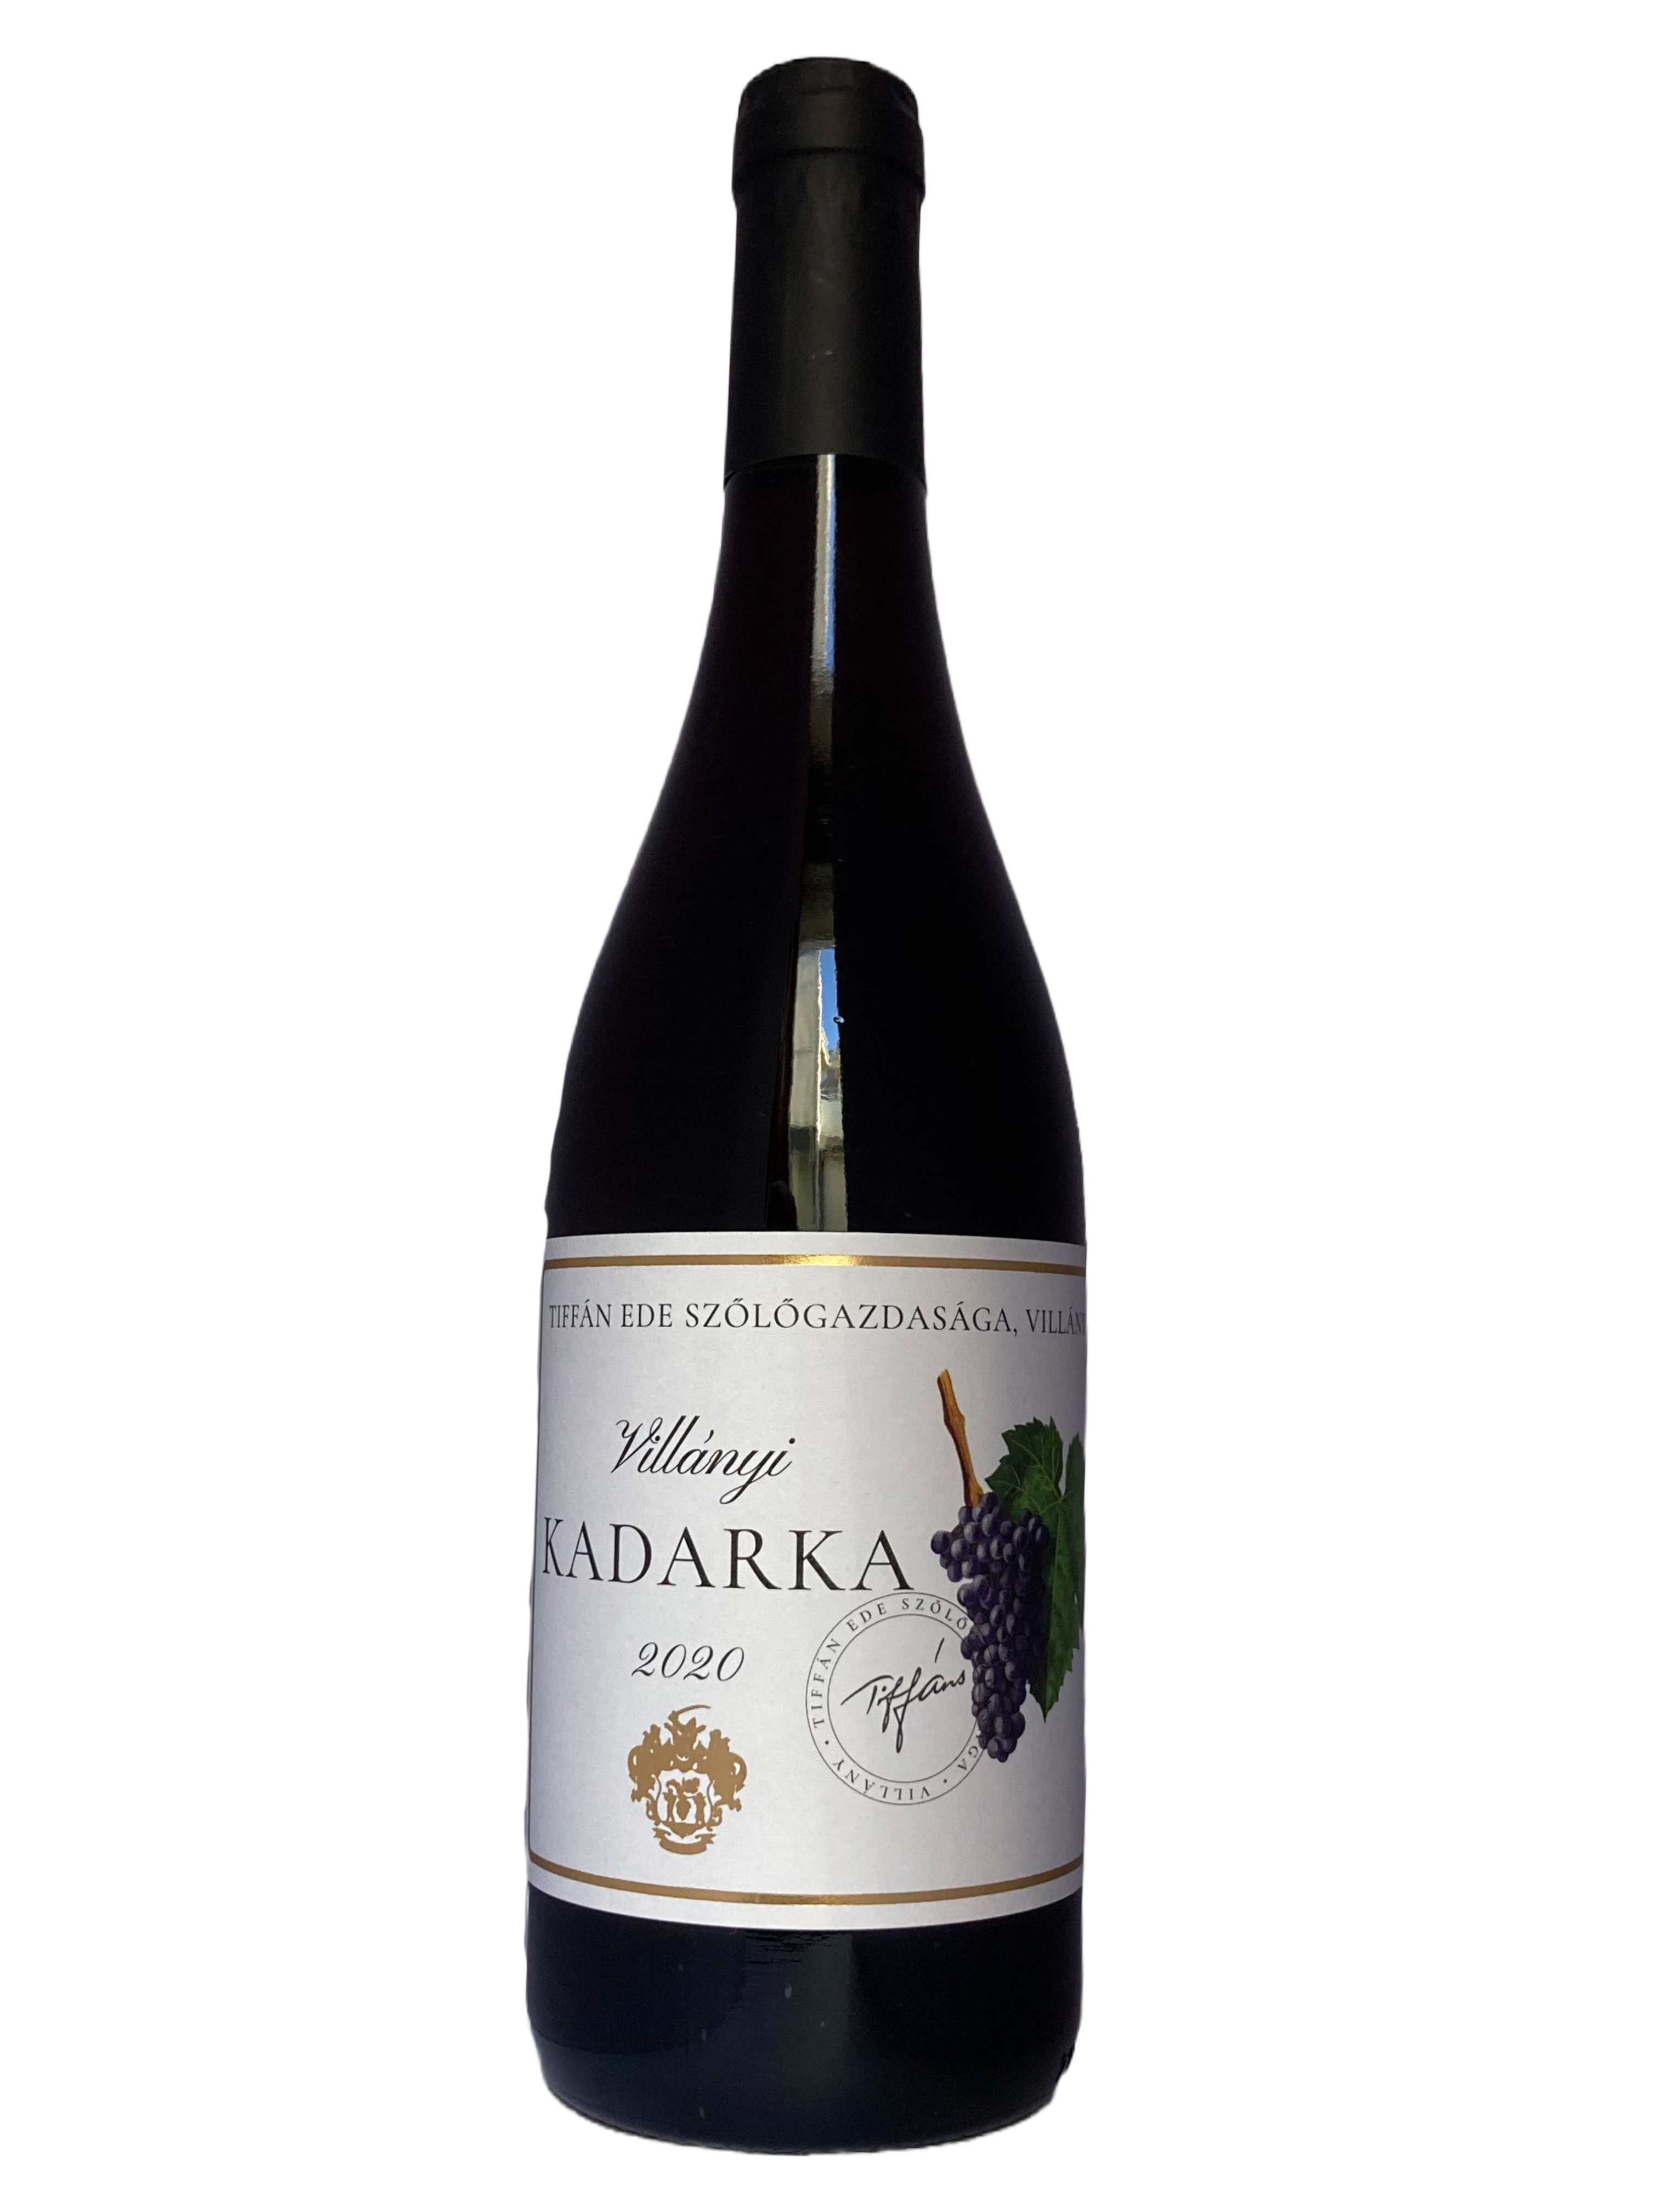 Kadarka rødvin fra Tiffan's vinfarm fra Villayni vin-regionen i Ungarn